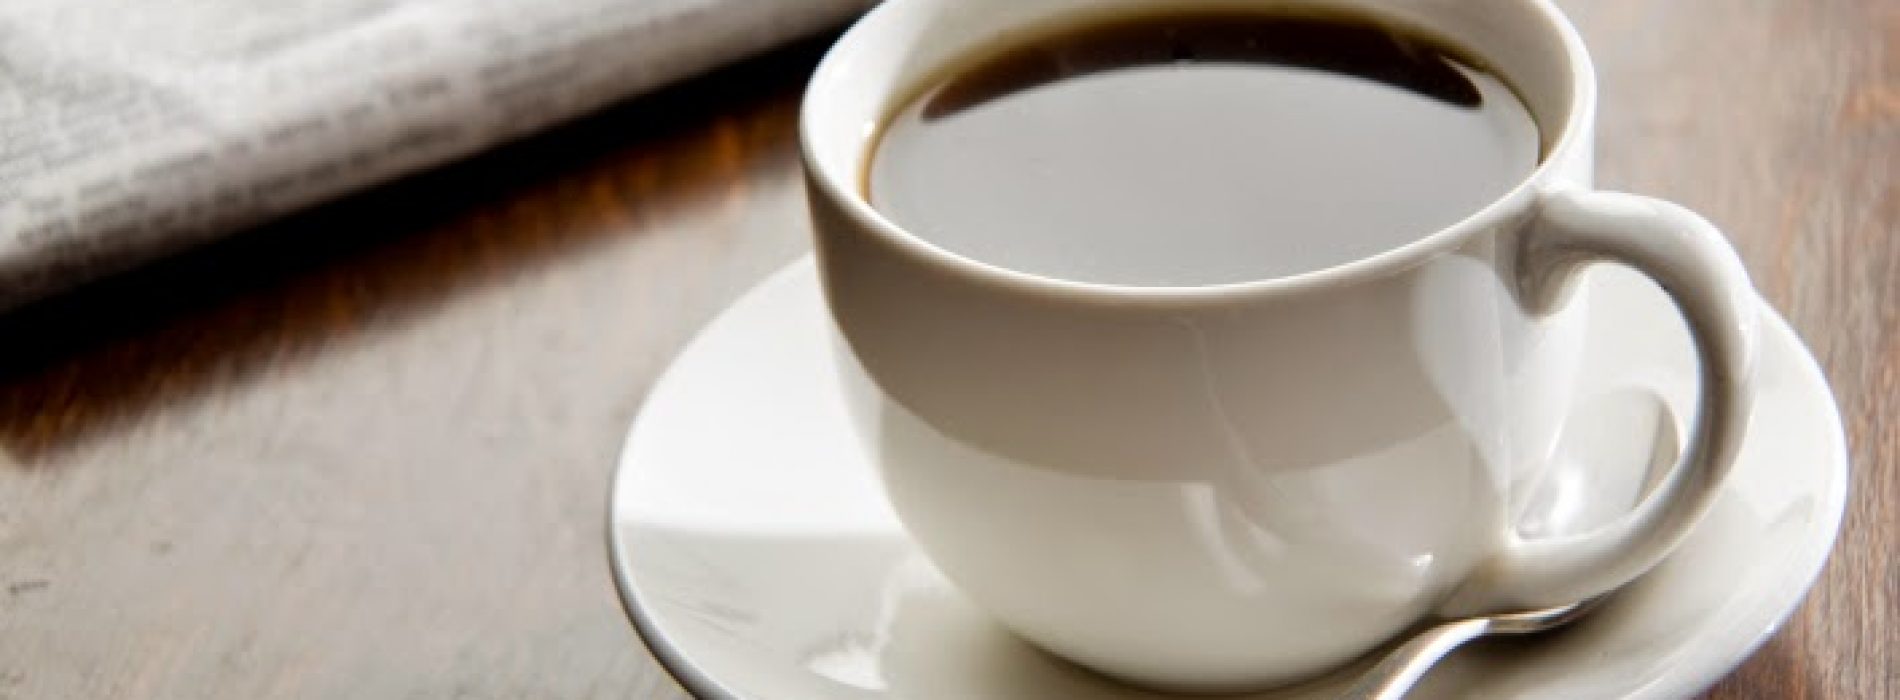 Koffie geassocieerd met verbeterde overleving bij patiënten met darmkanker